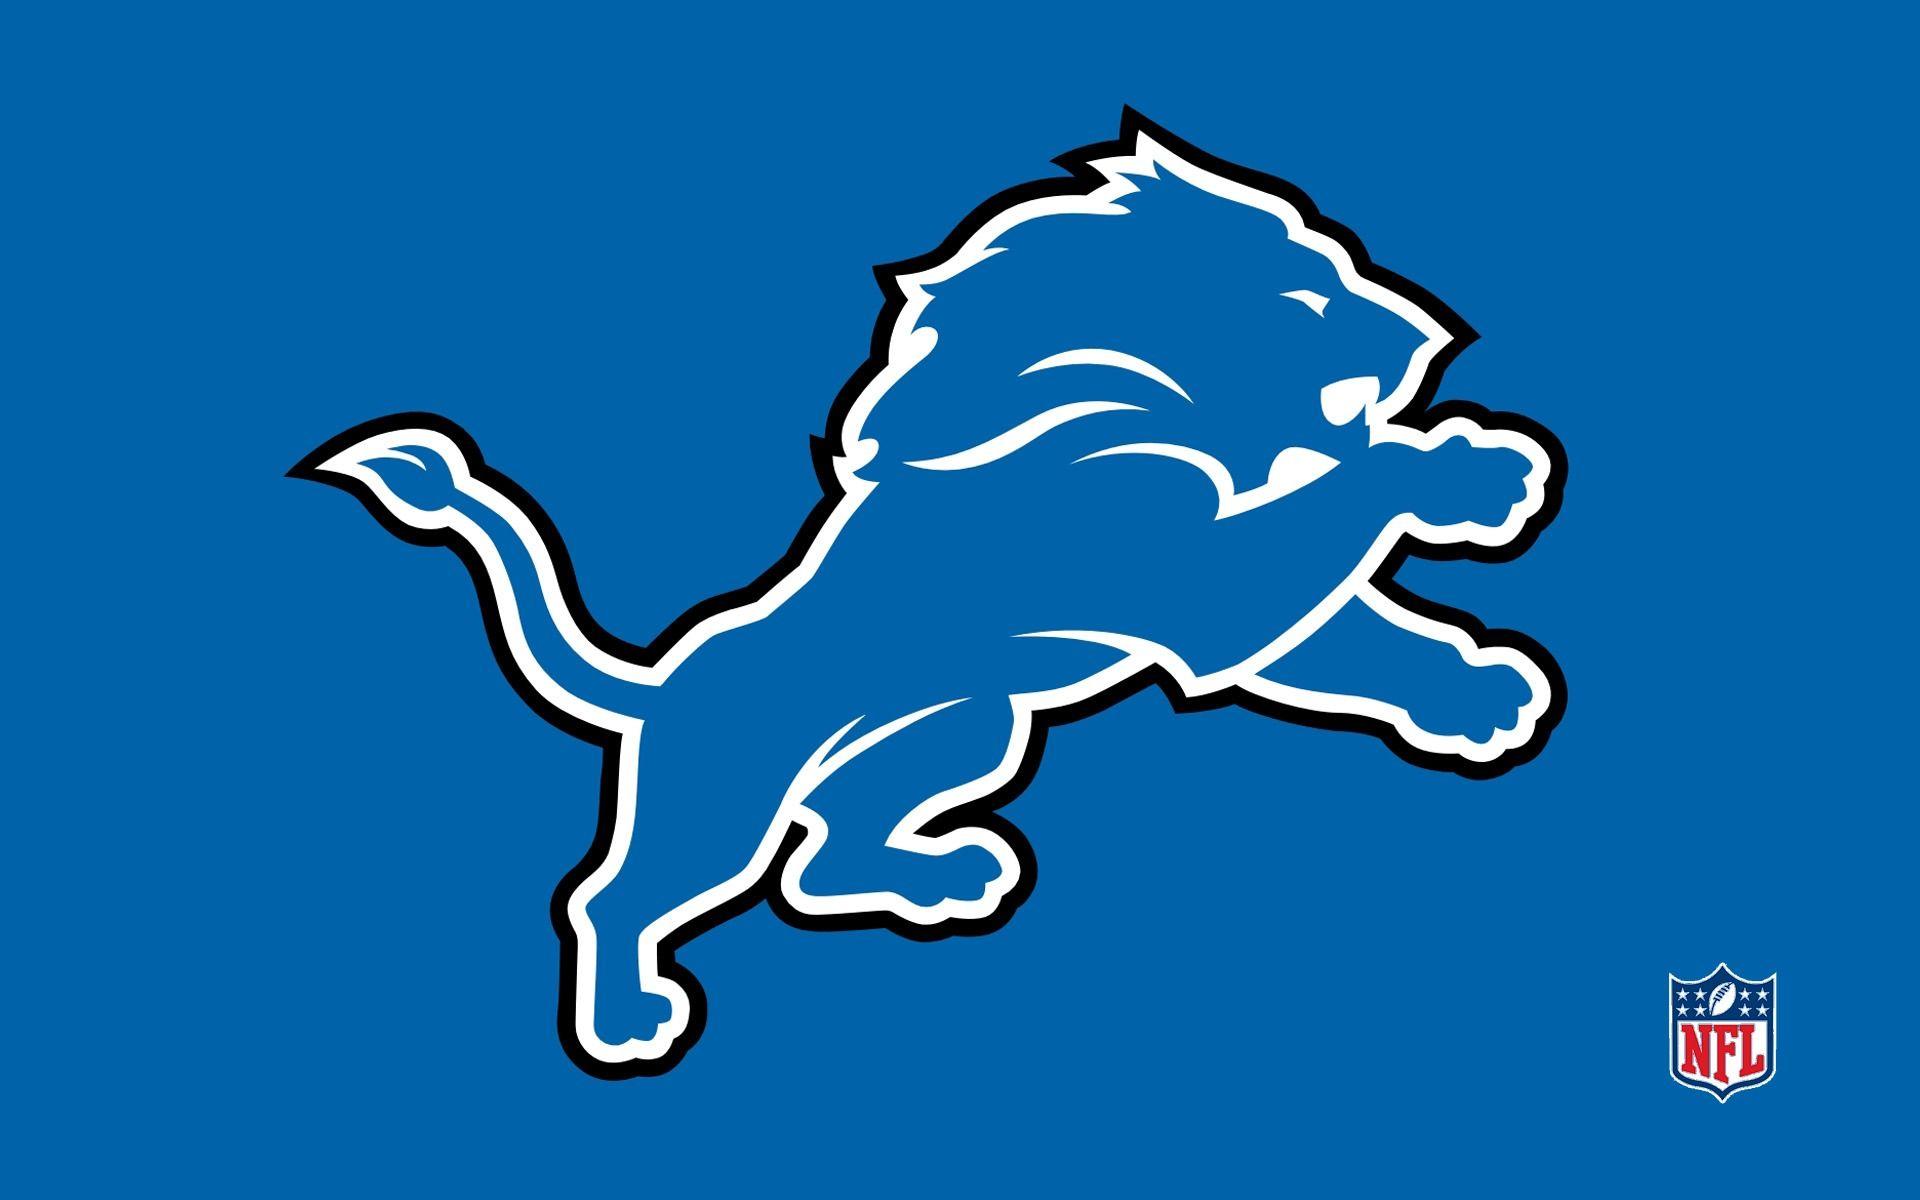 NFL Lions Logo - NFL Detroit Lions Logo Blue 1920x1200 WIDE NFL / Detroit Lions